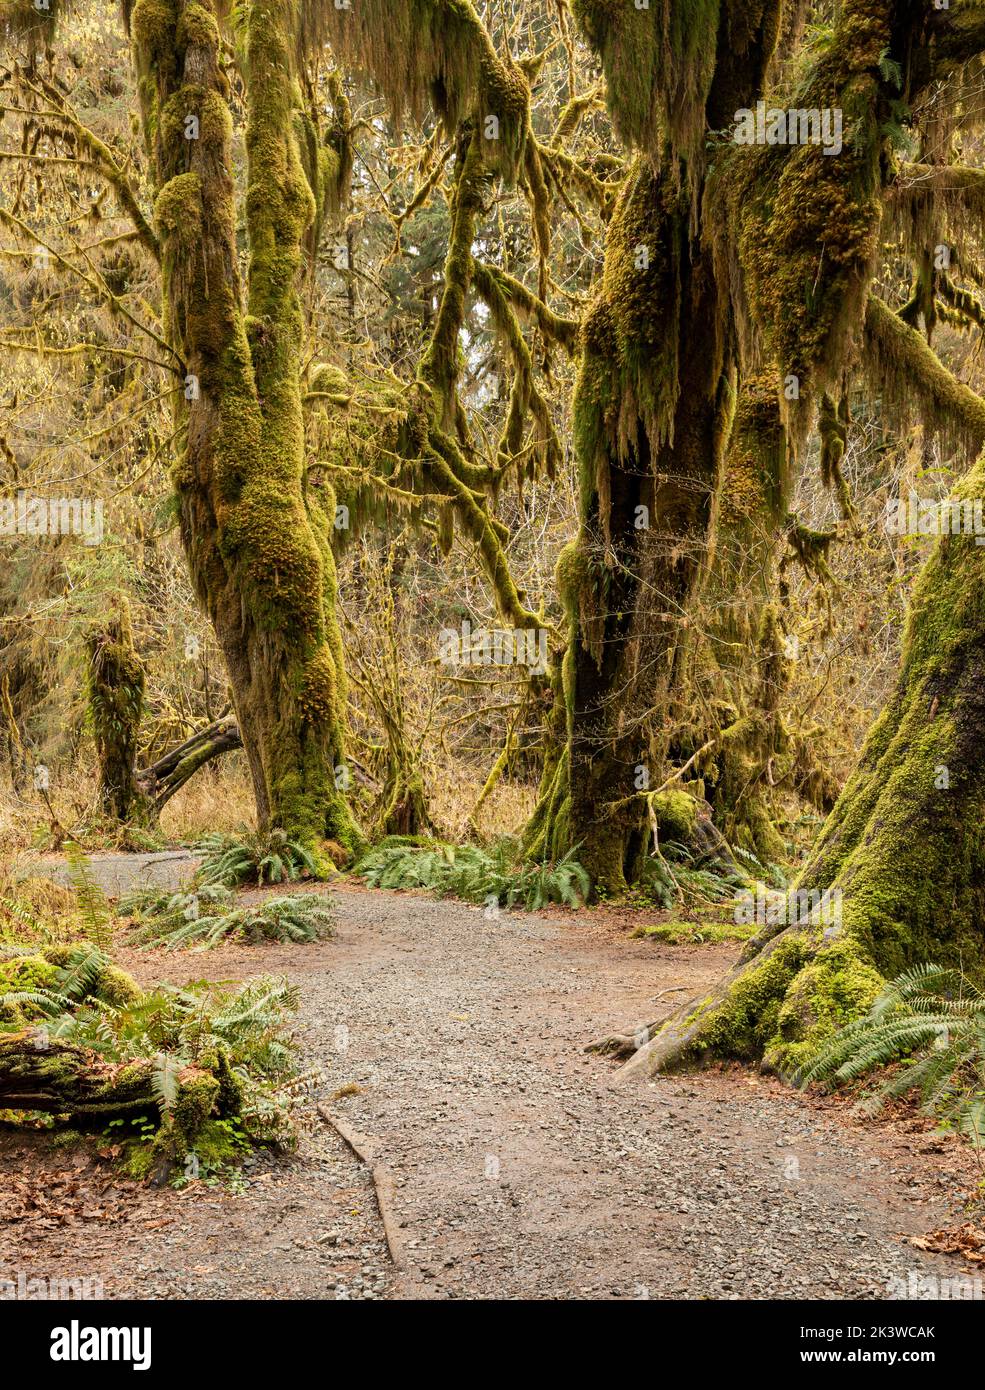 WA22102-00...WASHINGTON - Acero coperto di muschio nella Hall of Mosses, parte della foresta pluviale Hoh, nel Parco Nazionale Olimpico. Foto Stock